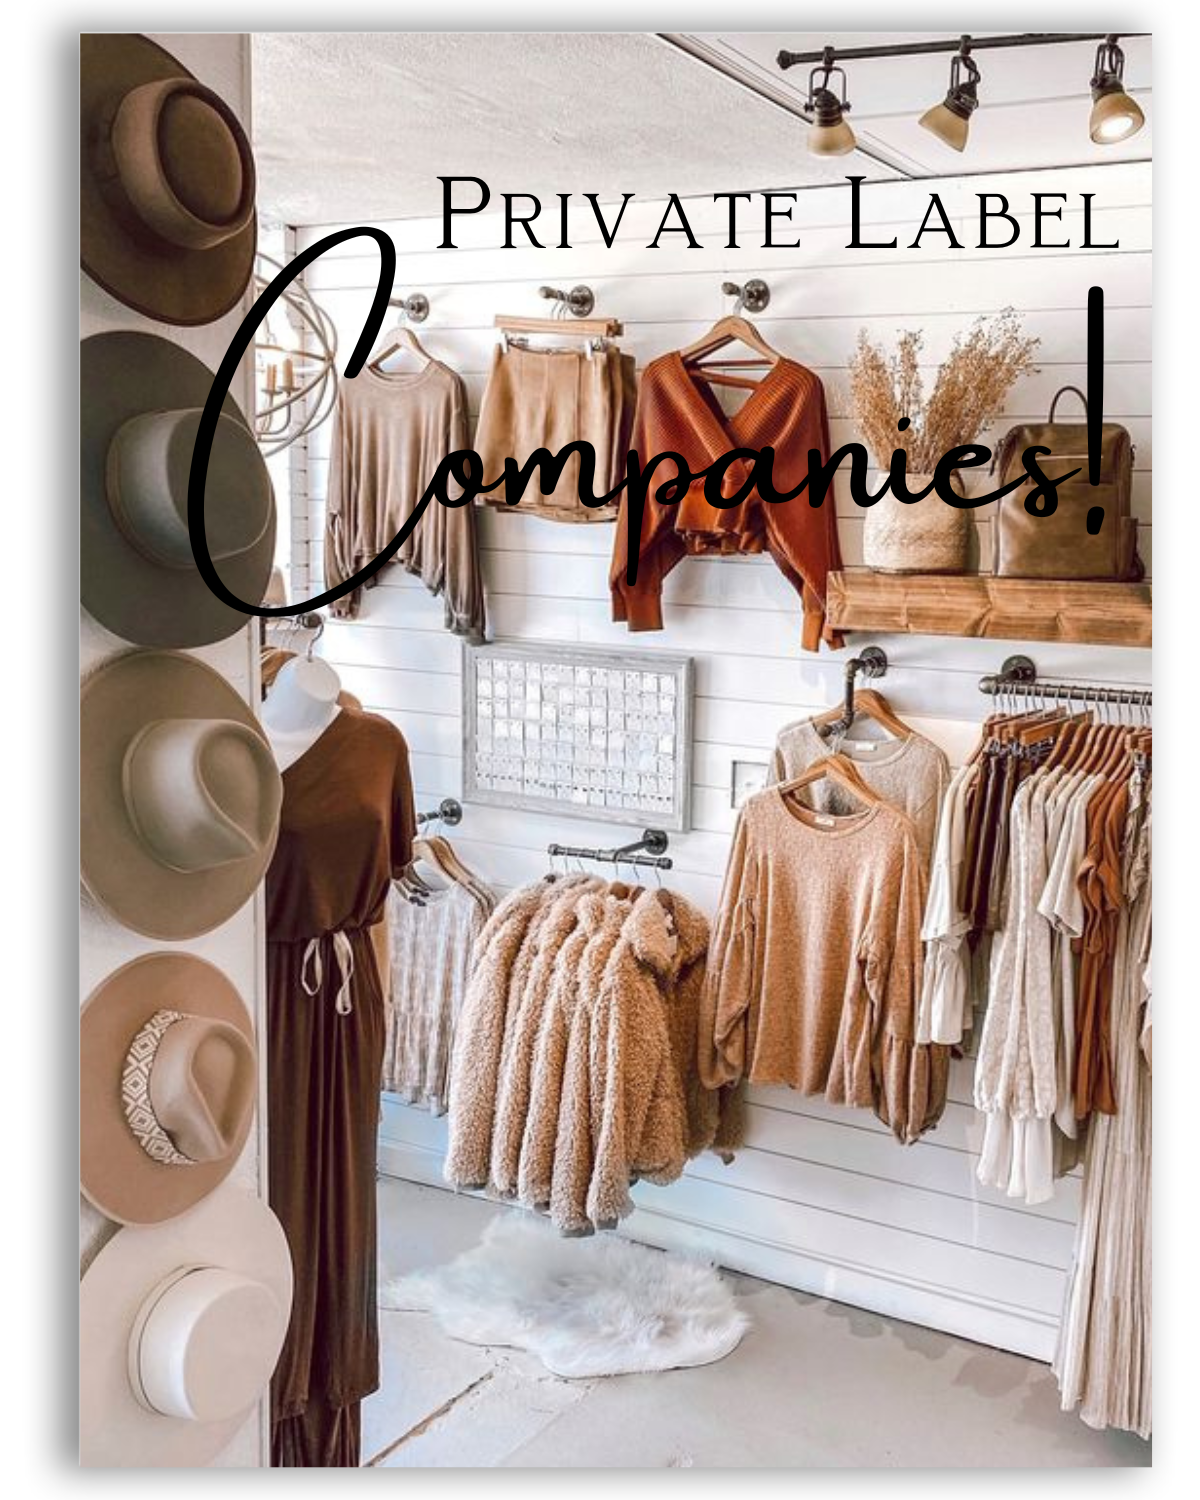 Private Label Companies